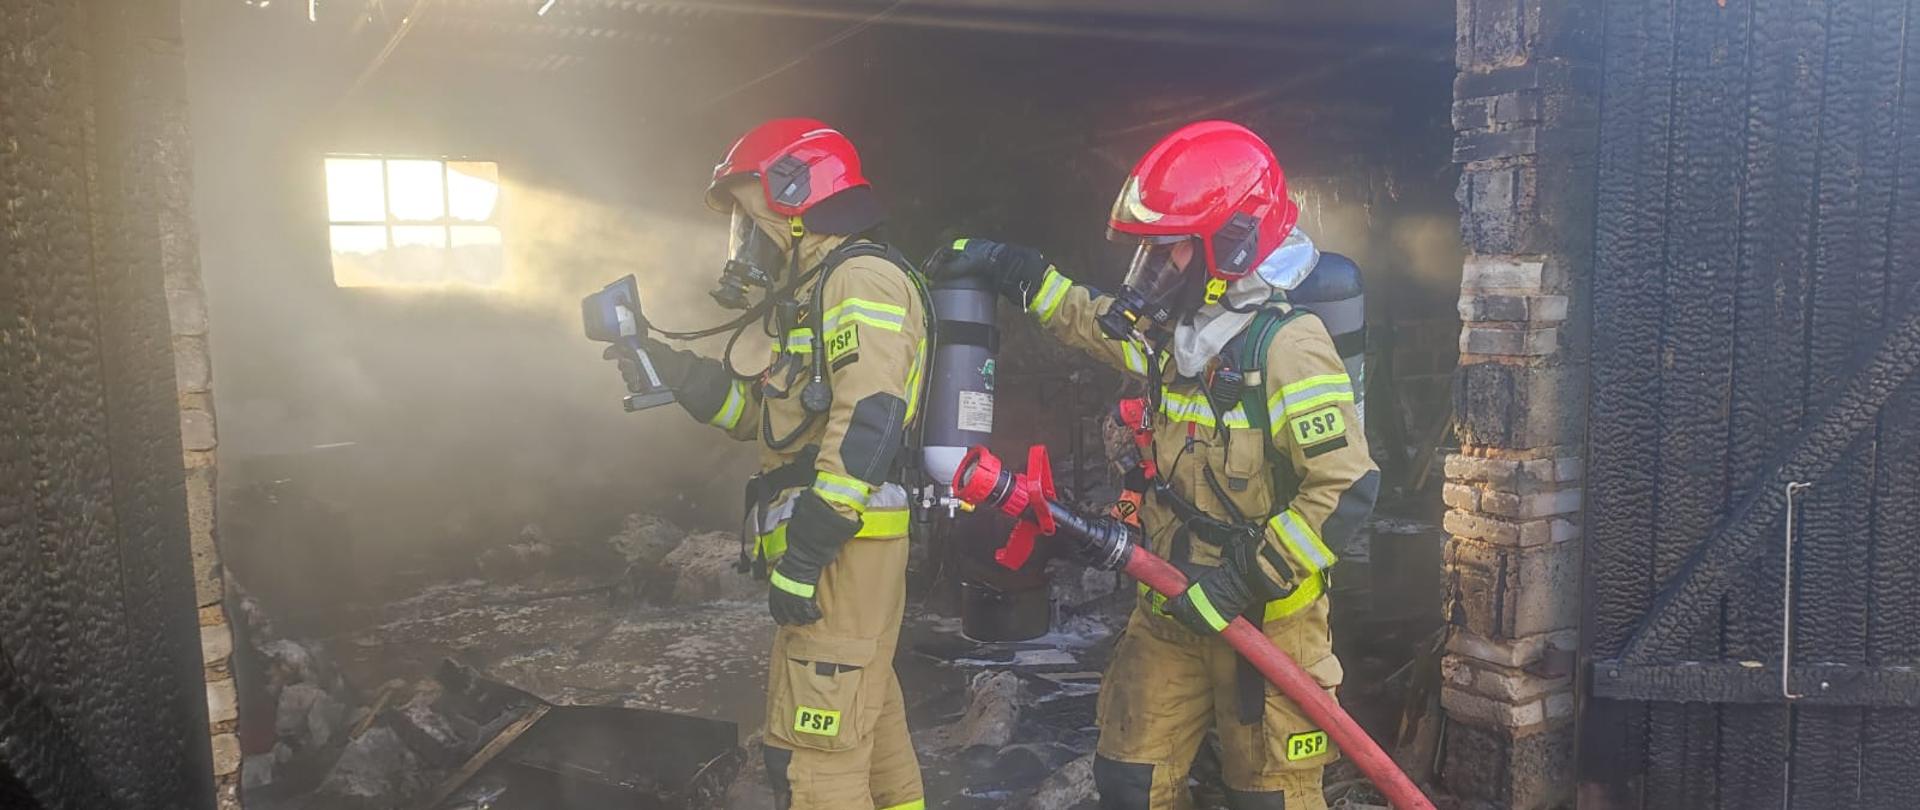 Na zdjęciu widać rotę dwóch strażaków w aparatach ochrony dróg oddechowych podczas wykonywania pomiaru kamerą termowizyjną 